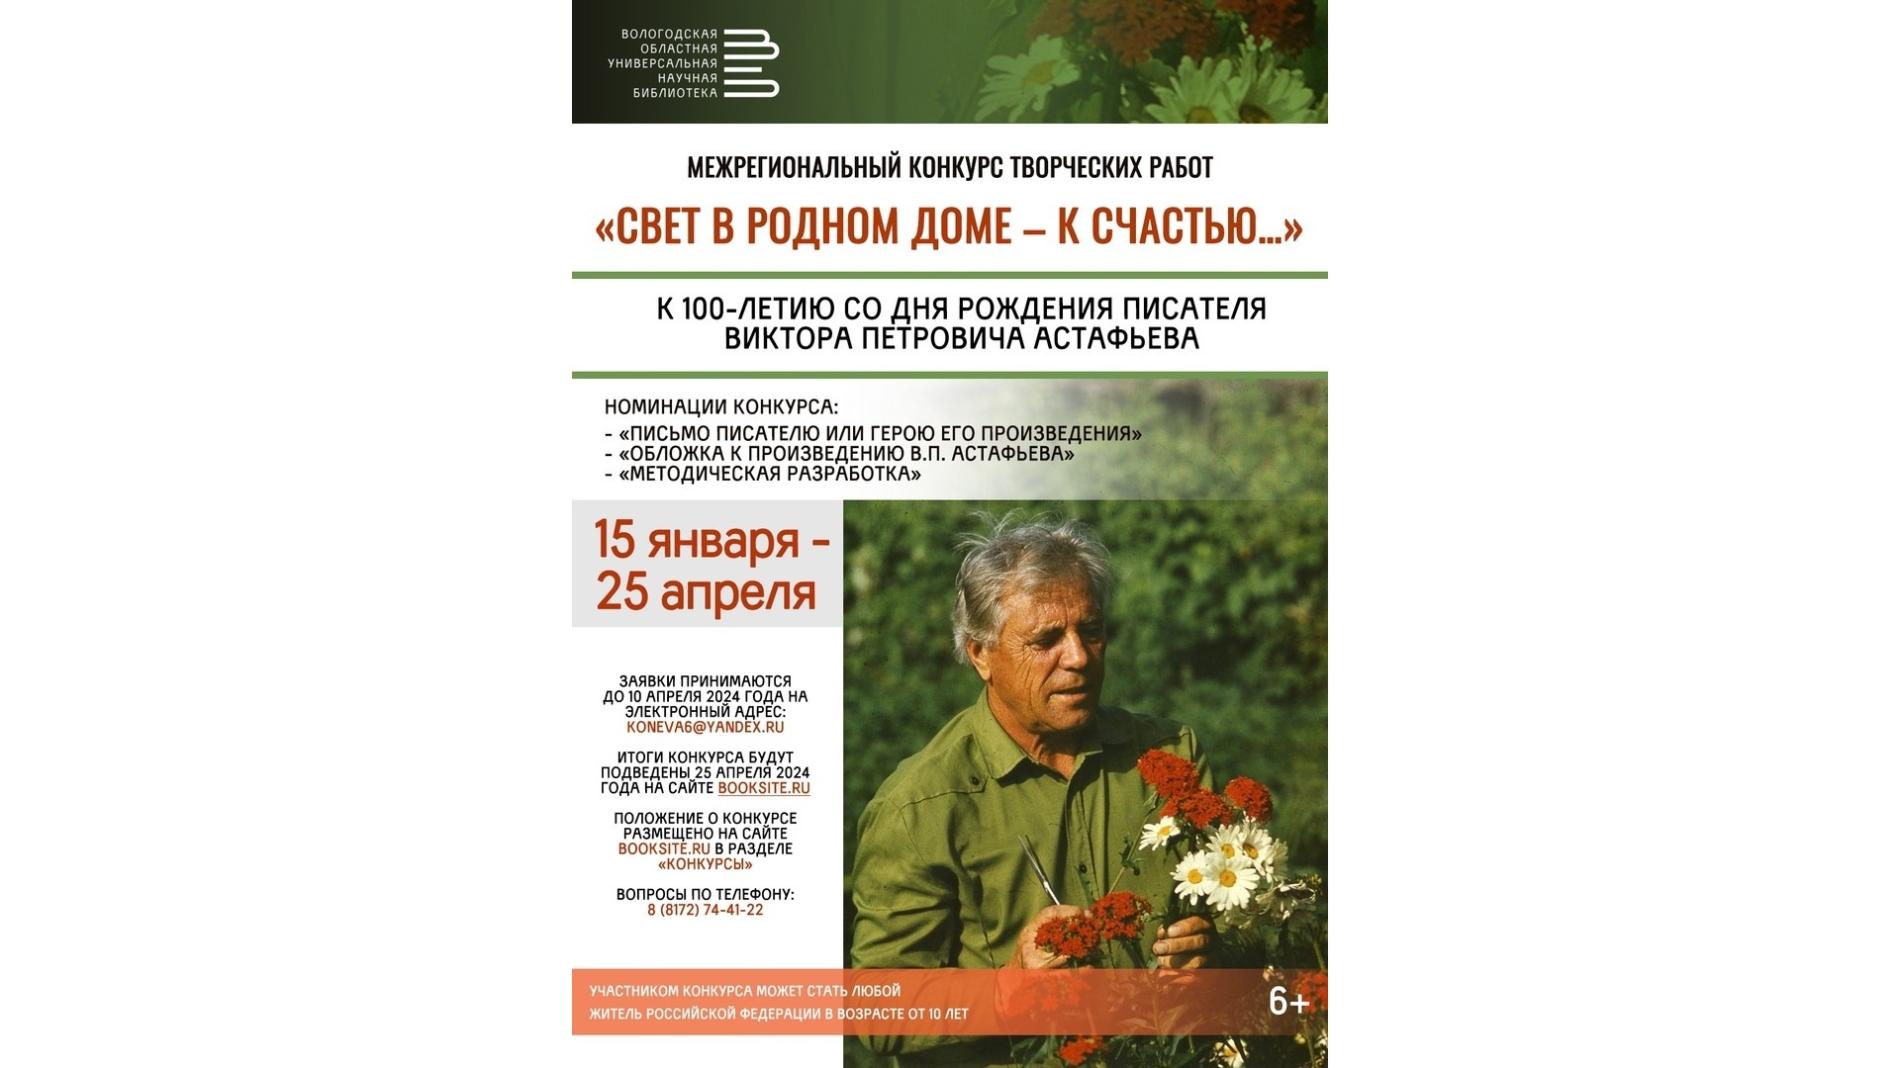 Конкурс творческих работ, посвящённых классику русской литературы, пройдёт в Вологде (12+)